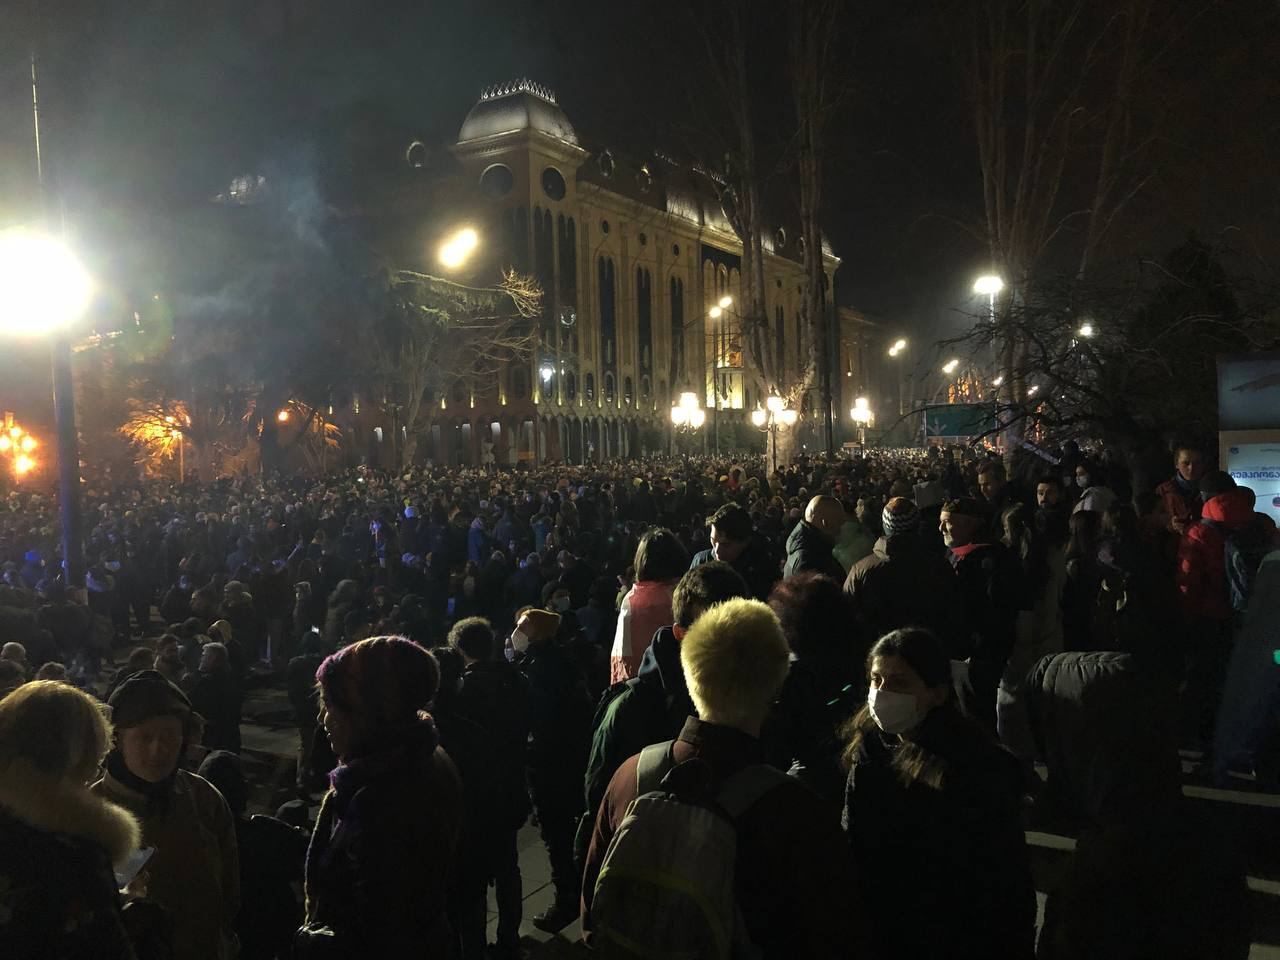 В Грузии полиция отпустила всех протестующих, но люди снова собираются на митинг. Видео